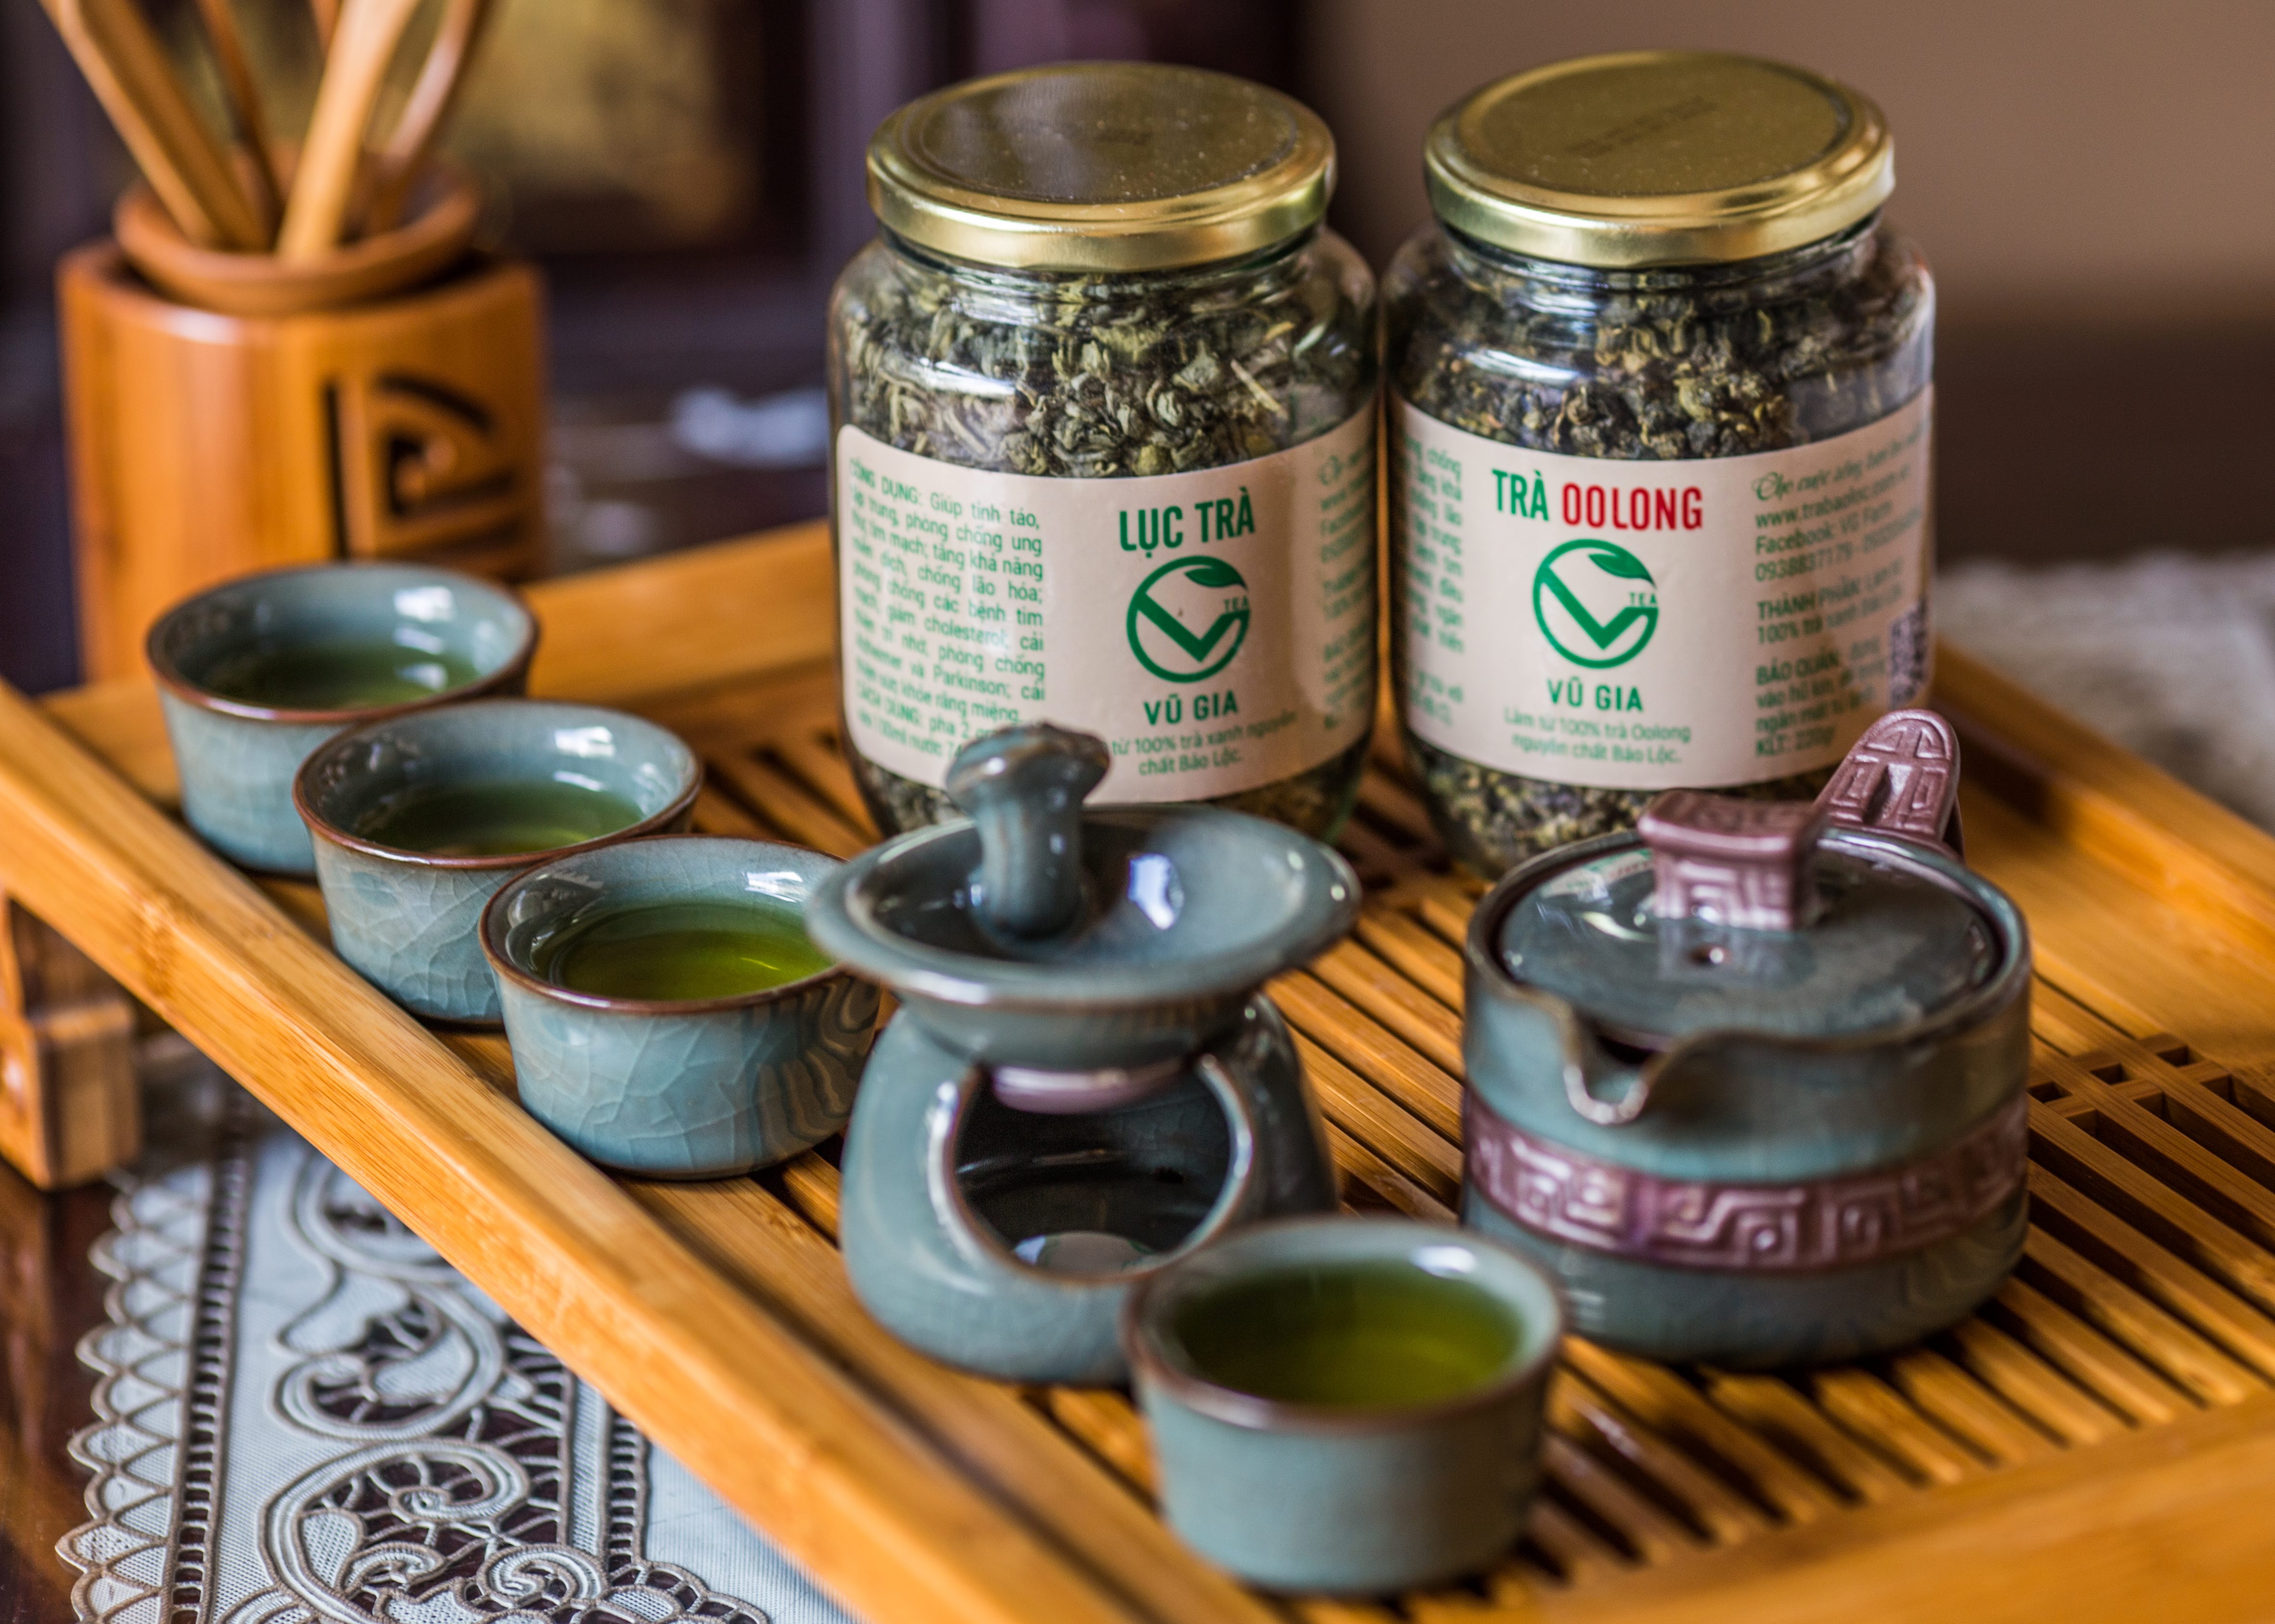 Trà Oolong Nguyên Chất Bảo Lộc Vũ Gia (200gr/hũ) - Nguyên liệu nấu trà sữa trân châu thơm ngon tại nhà, giảm cân an toàn